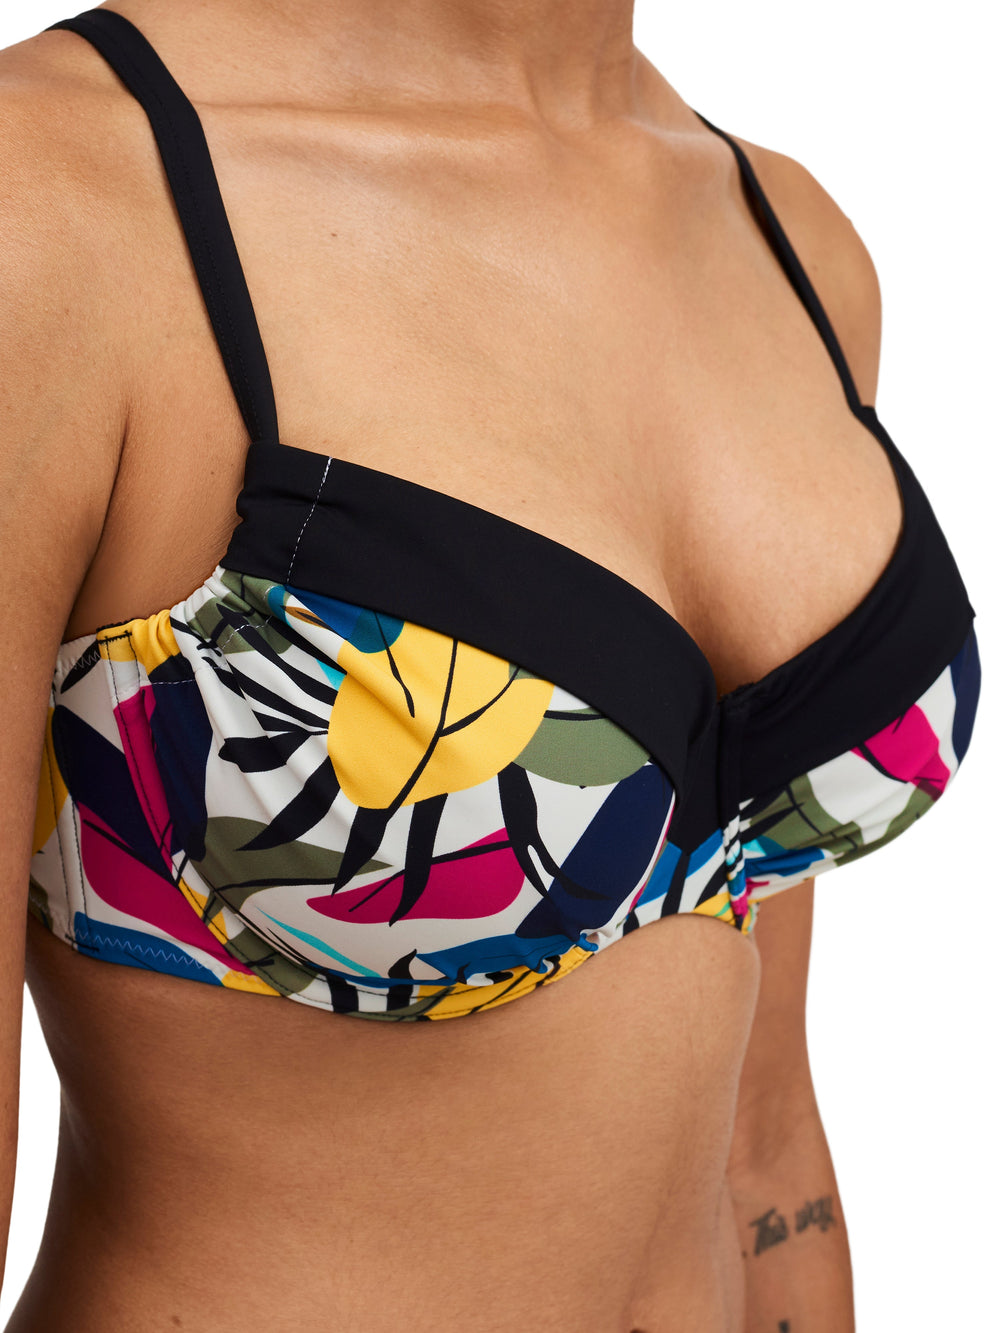 Trajes de Baño Femilet - Bikini Honduras Cubierto con Aros (Ajustable) Bikini Copa Completa Hojas Multicolor Trajes de Baño Femilet